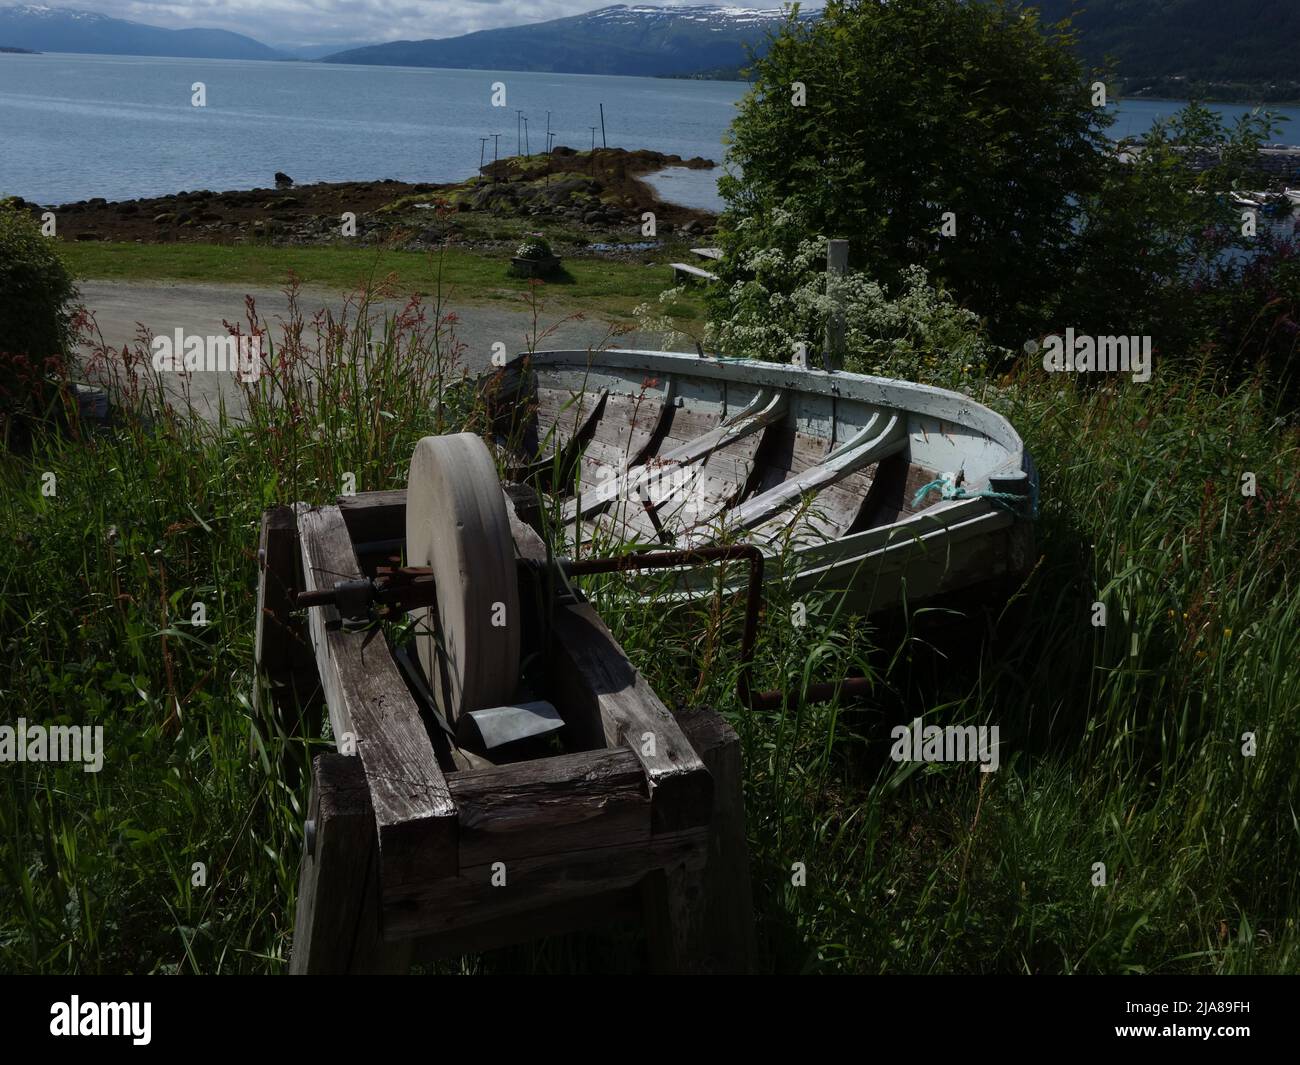 Un'antica pietra arenaria e una barca a remi si trovano in profondità nell'erba all'estremità di Moholmen. MO i Rana, Norvegia. Foto Stock